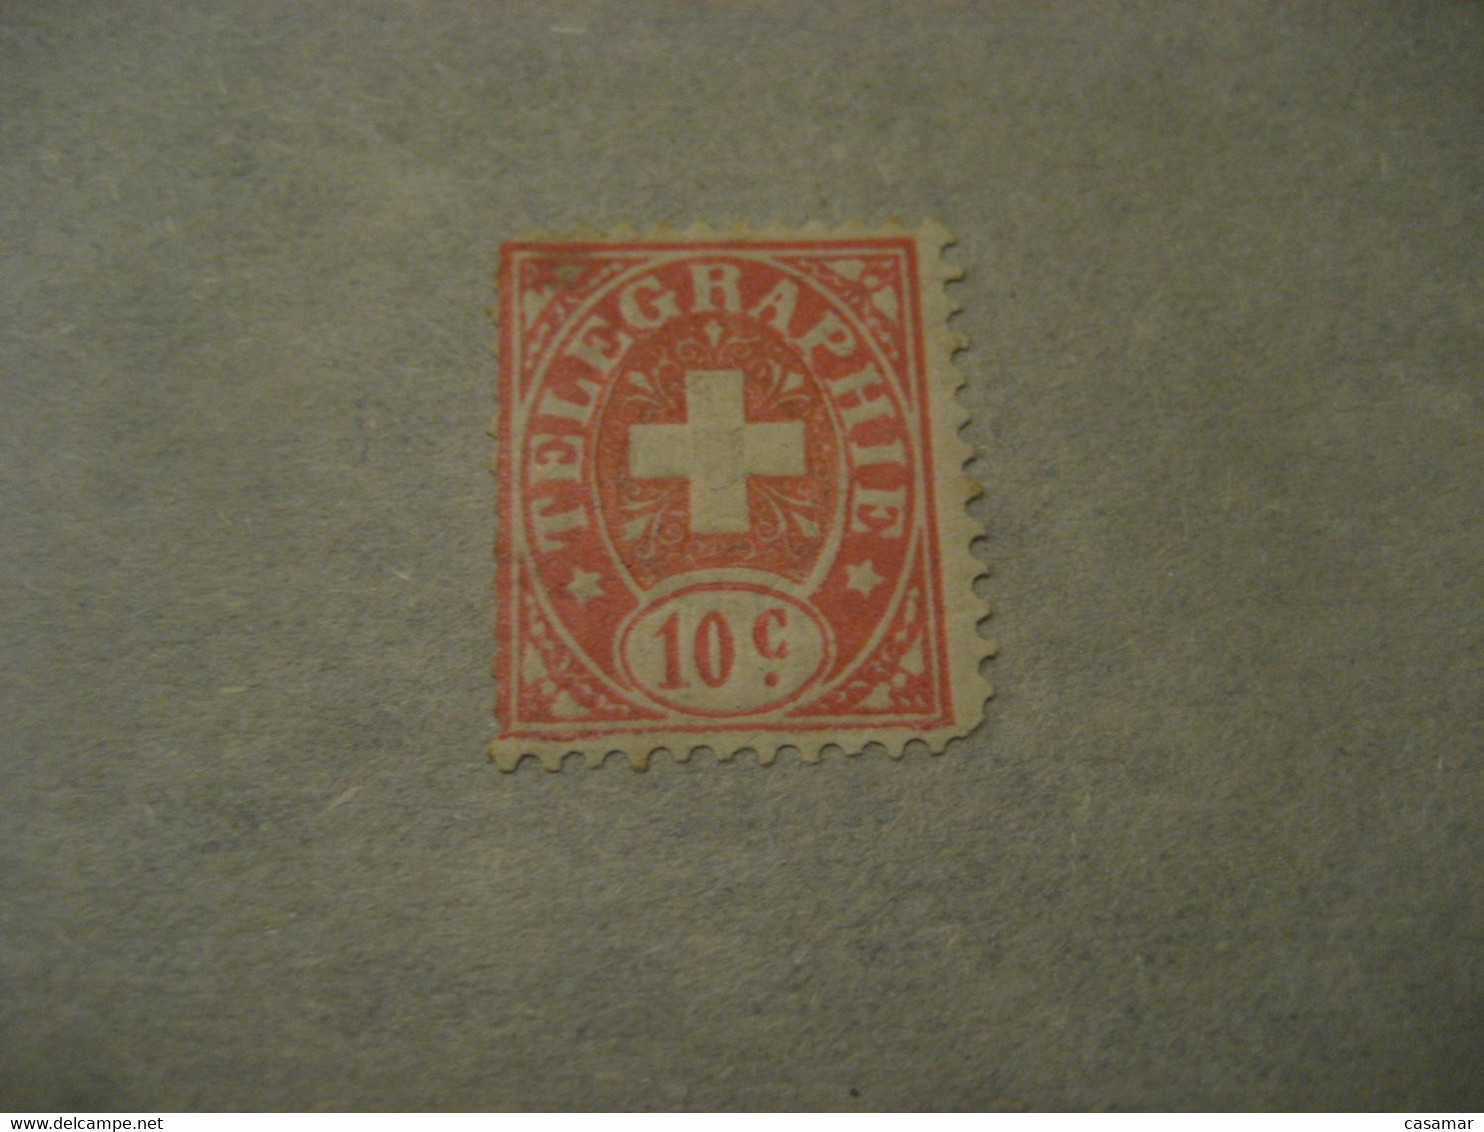 10c TELEGRAPHIE Telegraph SWITZERLAND Fiscal Revenue Suisse Slight Damaged - Telegrafo